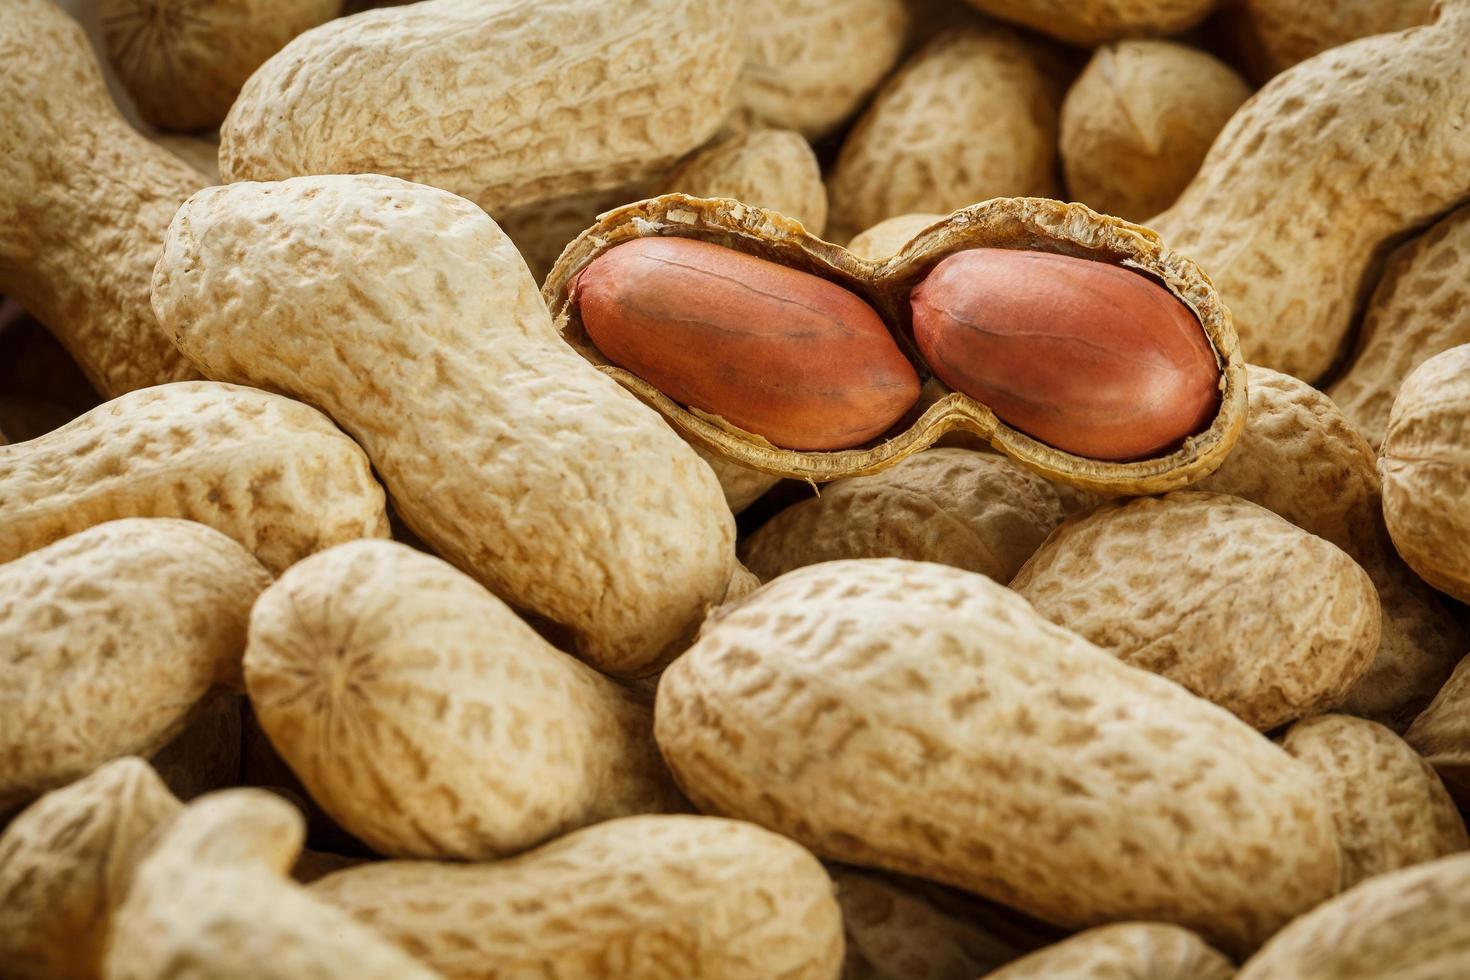 amendoim descascado em amendoins bem. amendoins, para fundo ou texturas. foto